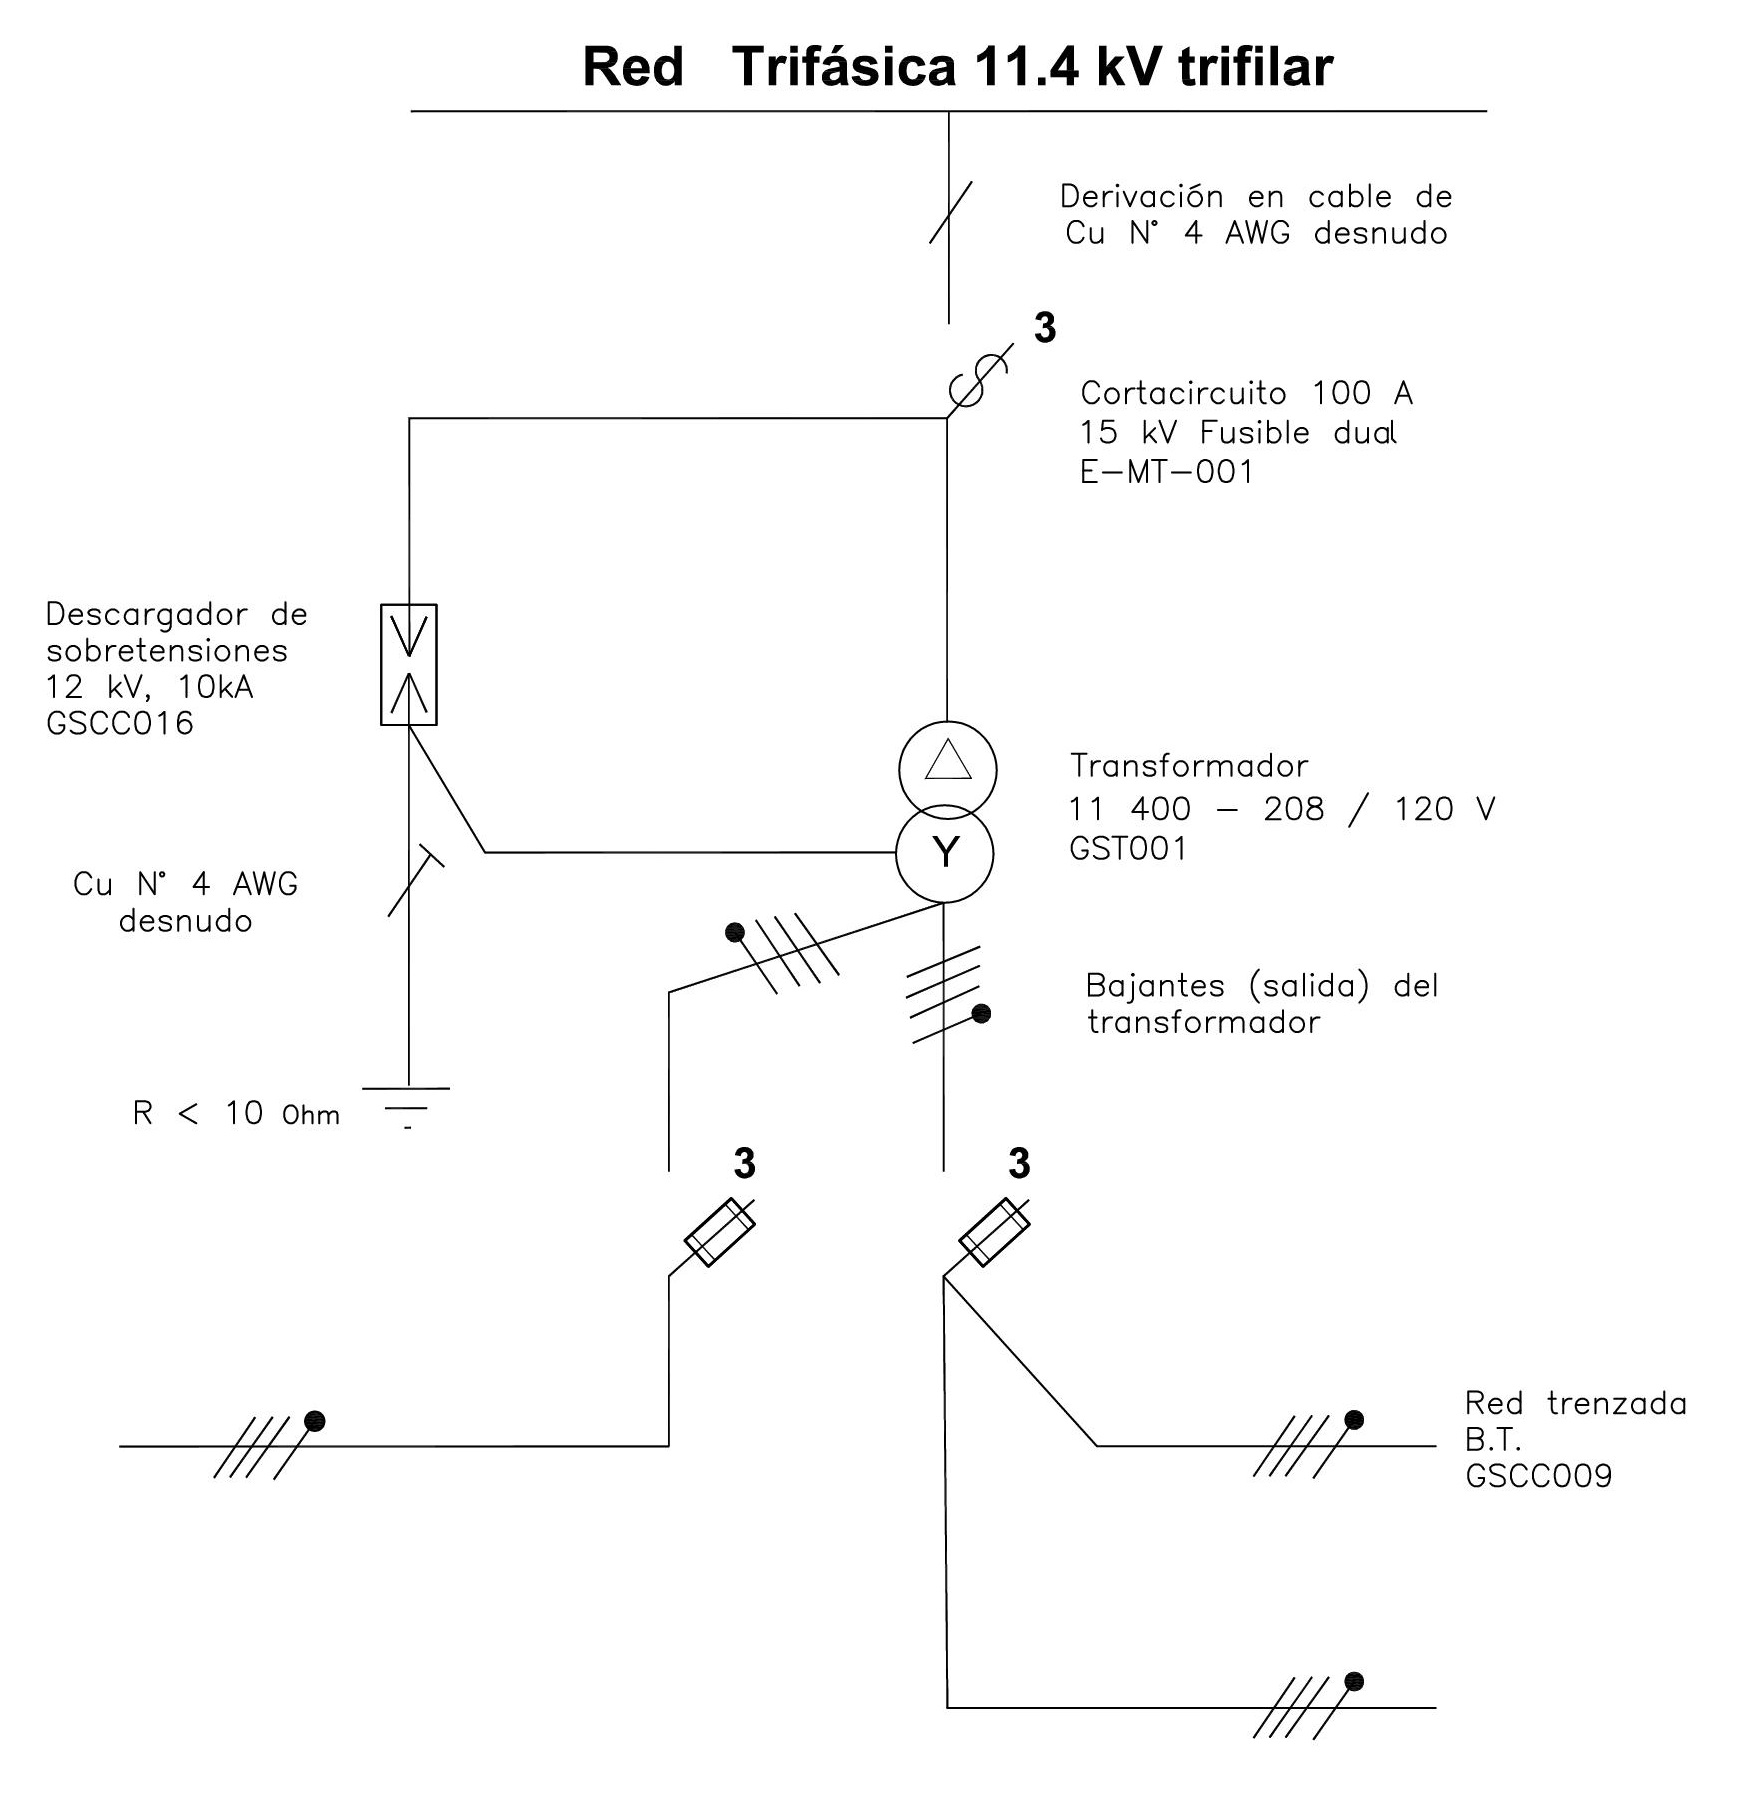 CTU516 Diagrama unifilar instalación transformador trifásico. Likinormas